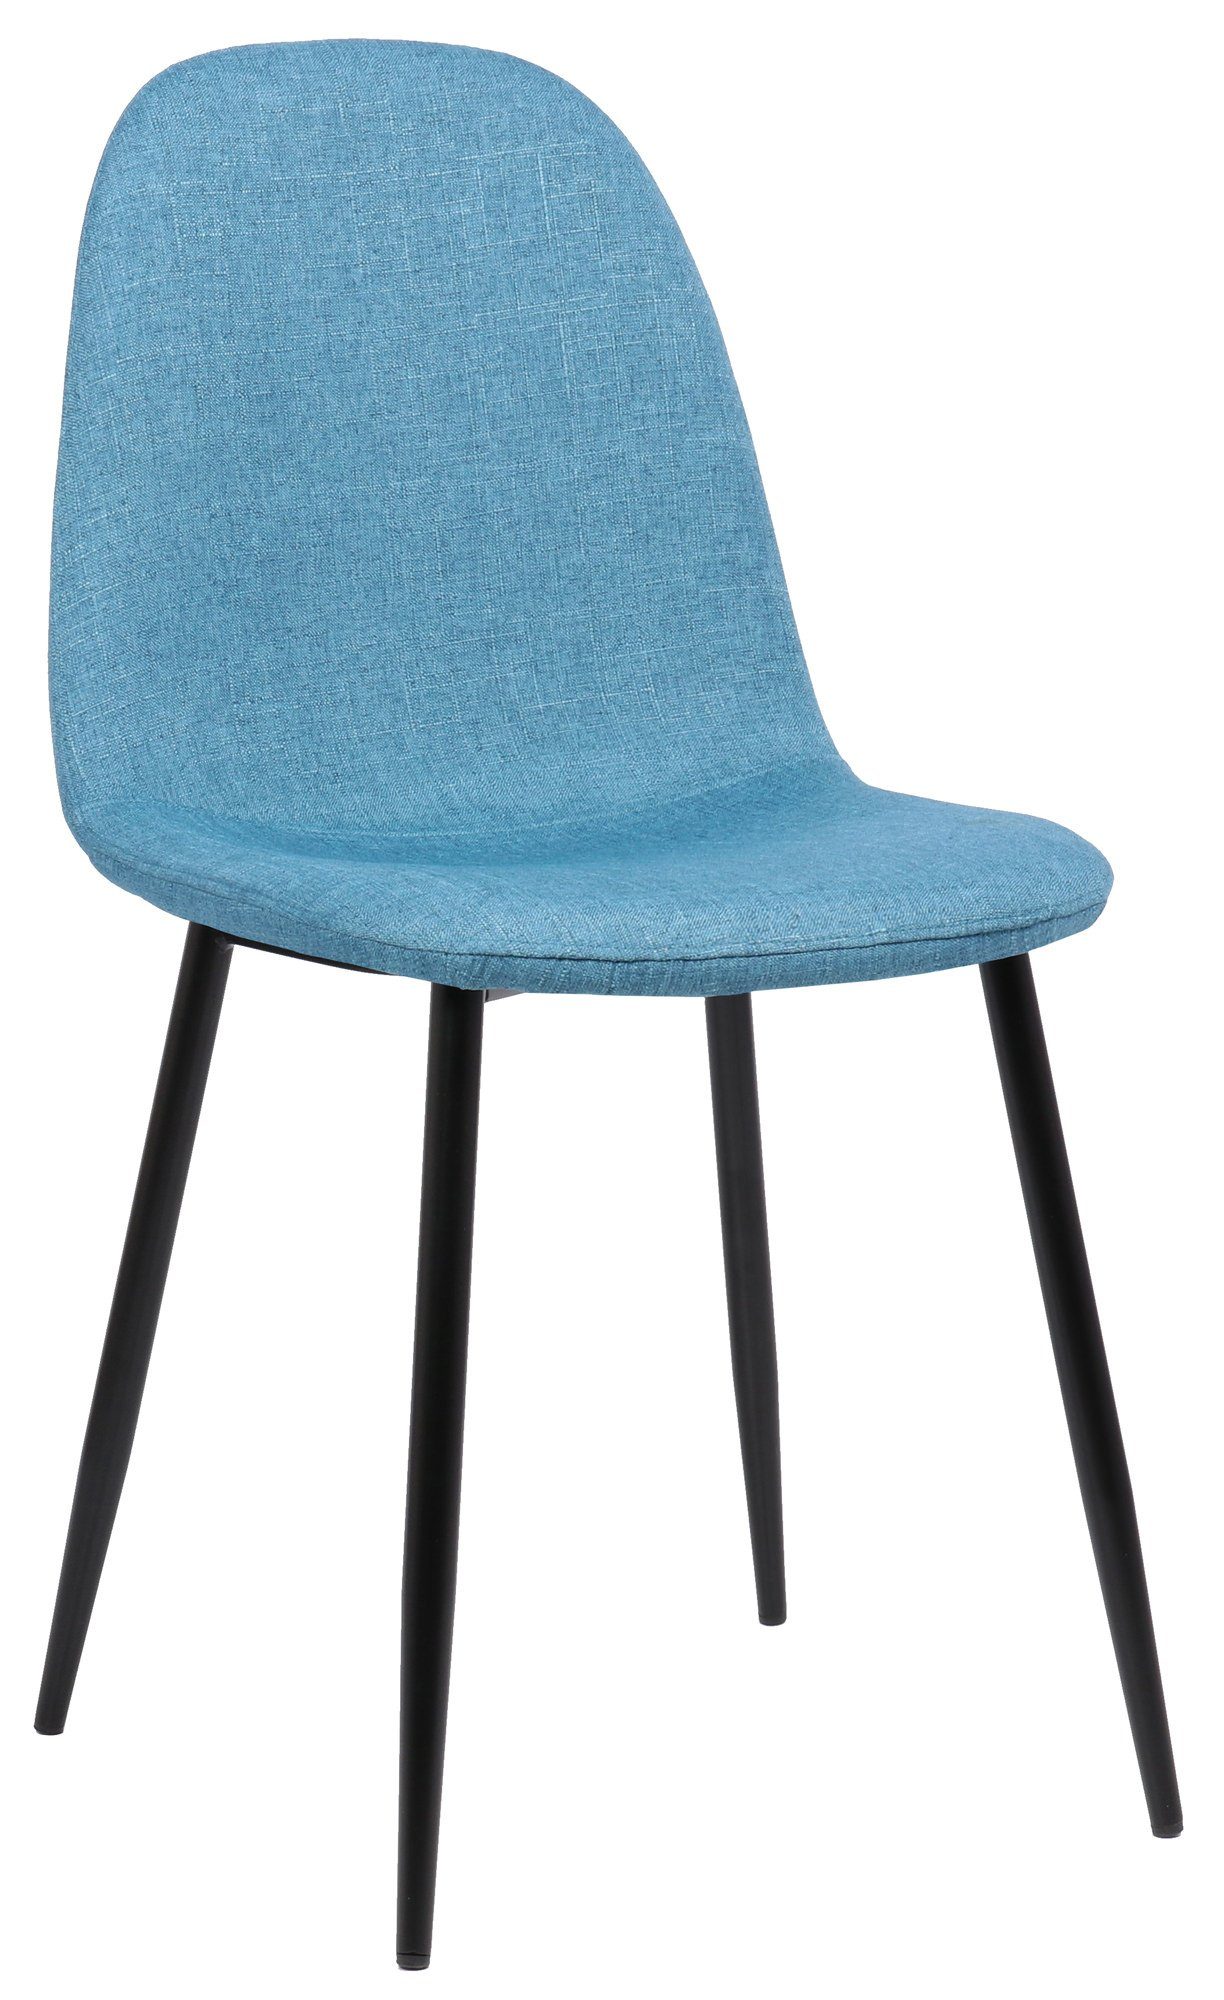 TPFLiving Esszimmerstuhl Naples mit hochwertig gepolsterter Sitzfläche - Konferenzstuhl (Küchenstuhl - Esstischstuhl - Wohnzimmerstuhl - Polsterstuhl), Gestell: Metall schwarz - Sitzfläche: Stoff blau